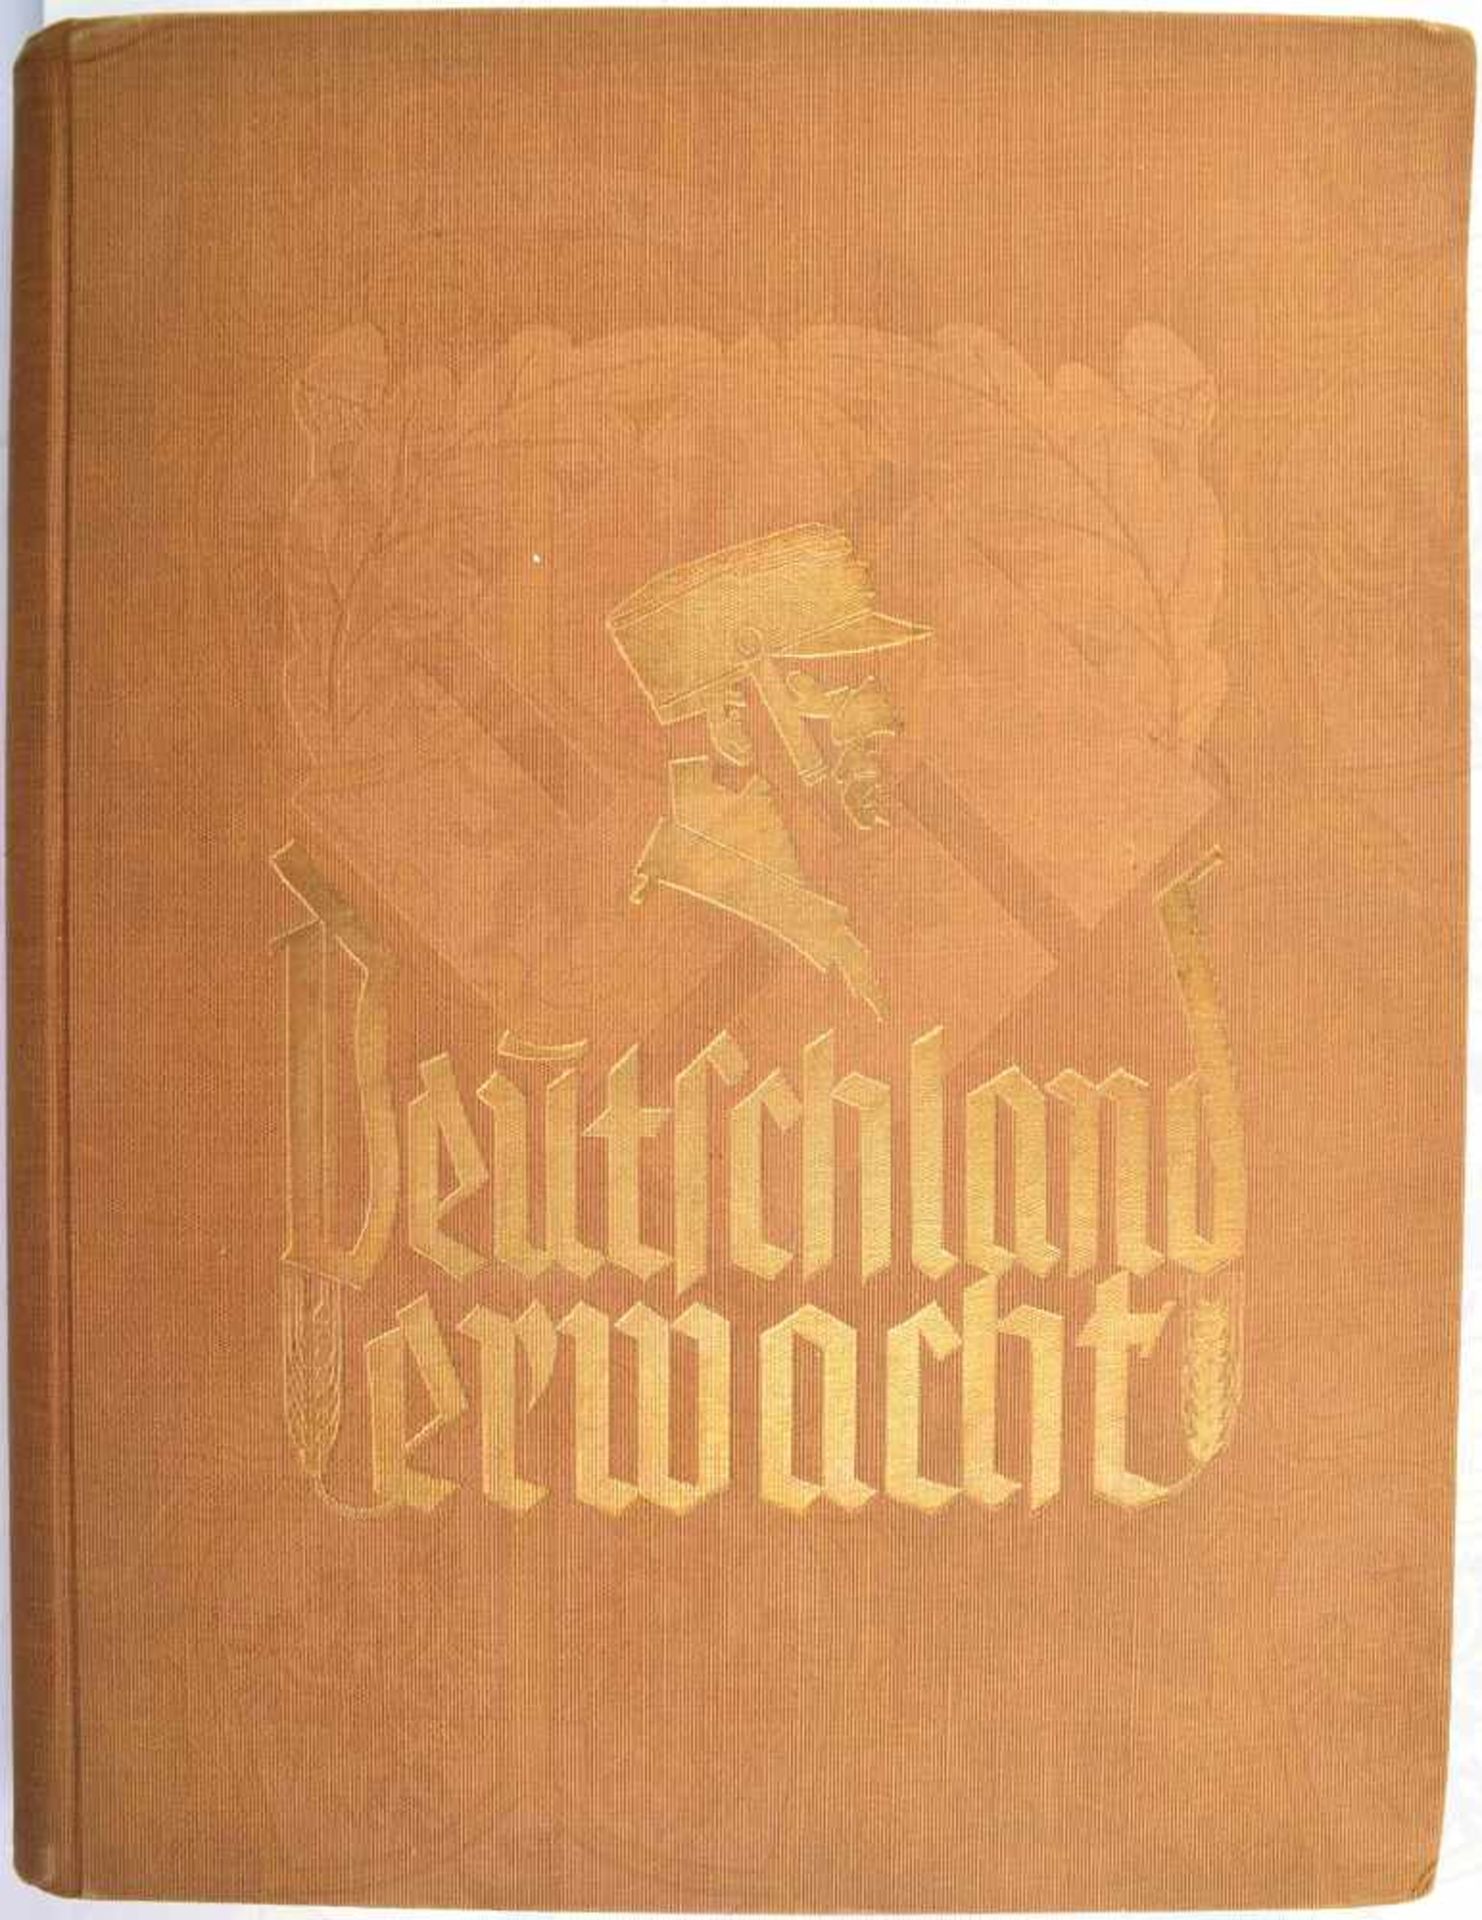 DEUTSCHLAND ERWACHT, „Werden, Kampf und Sieg der NSDAP“, 1. Auflage, Altona-Bahrenfeld 1933, 225